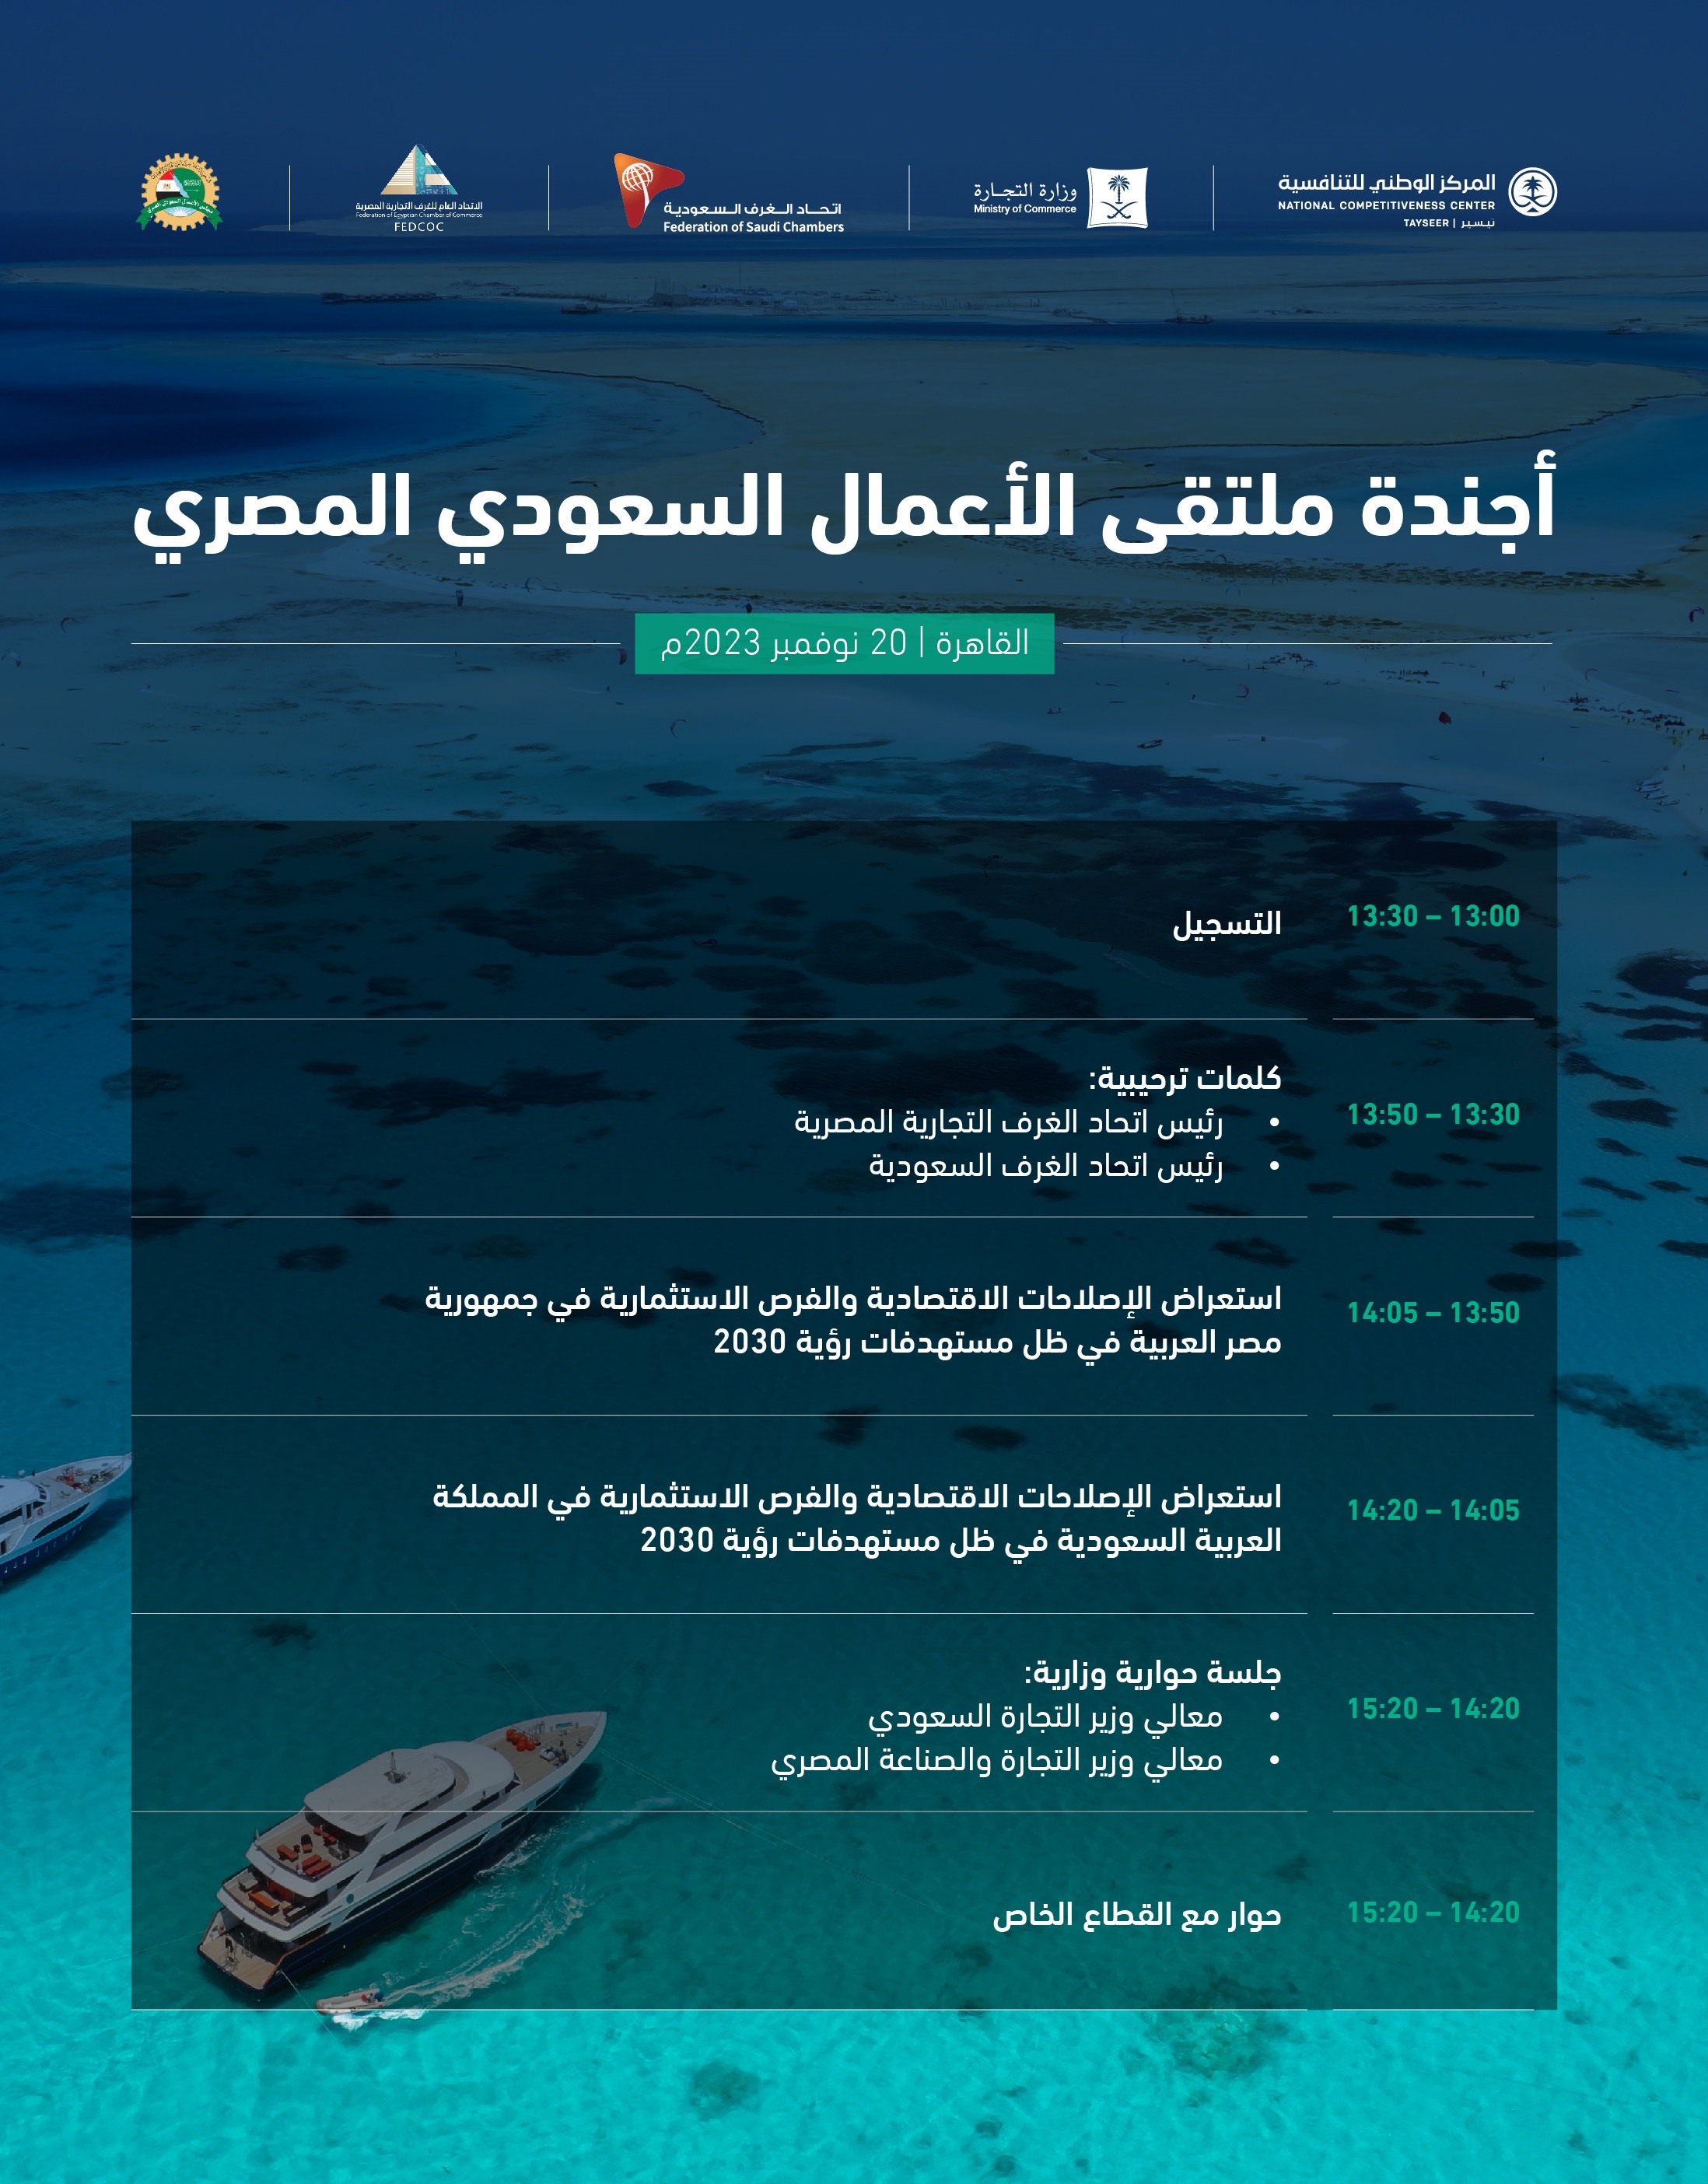 مجلس الأعمال السعودي المصري_الأجندة.jpg